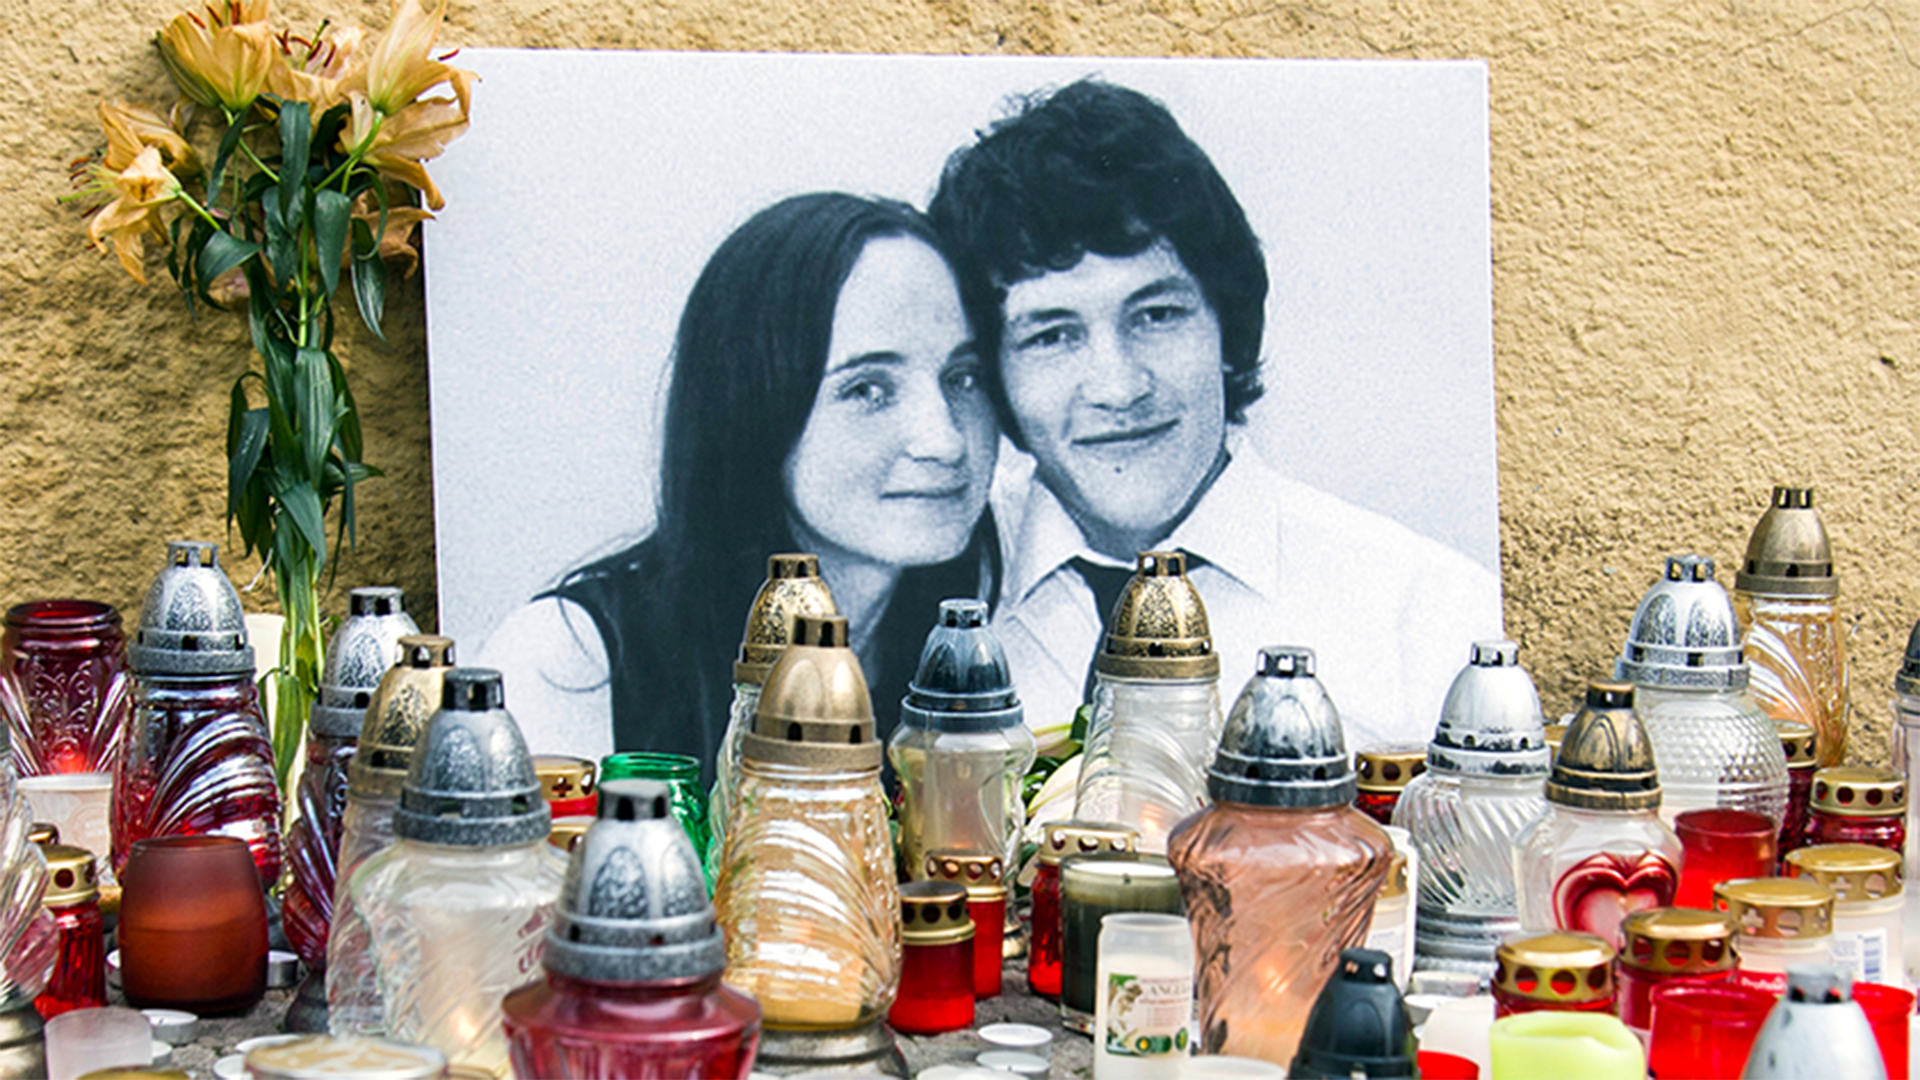 Jan Kuciak era el objetivo en el asesinato, su prometida Martina Kusnirova fue una víctima inocente que se encontraba en el lugar equivocado